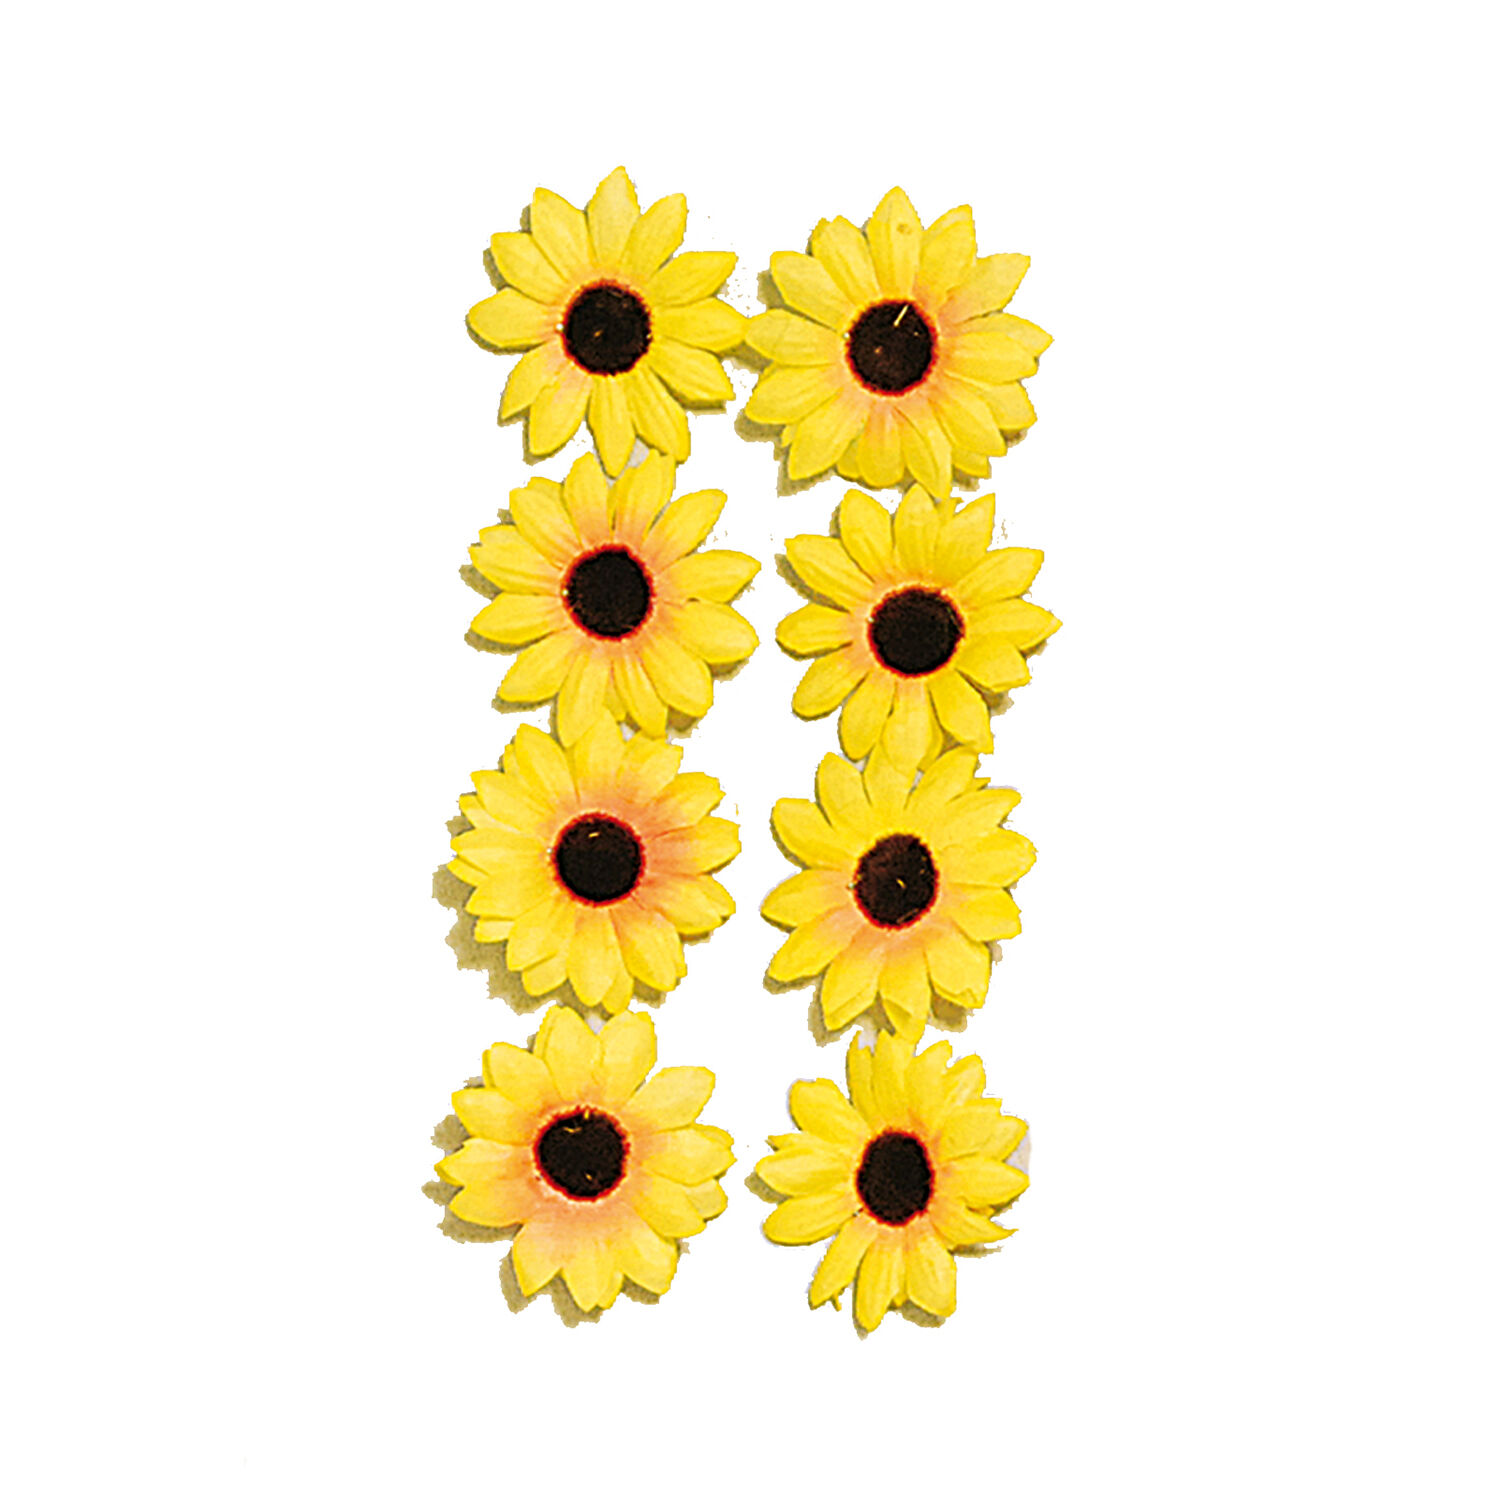 NEU Sonnenblumen-Sortiment, 30 Stck, ca. 4cm Durchmesser